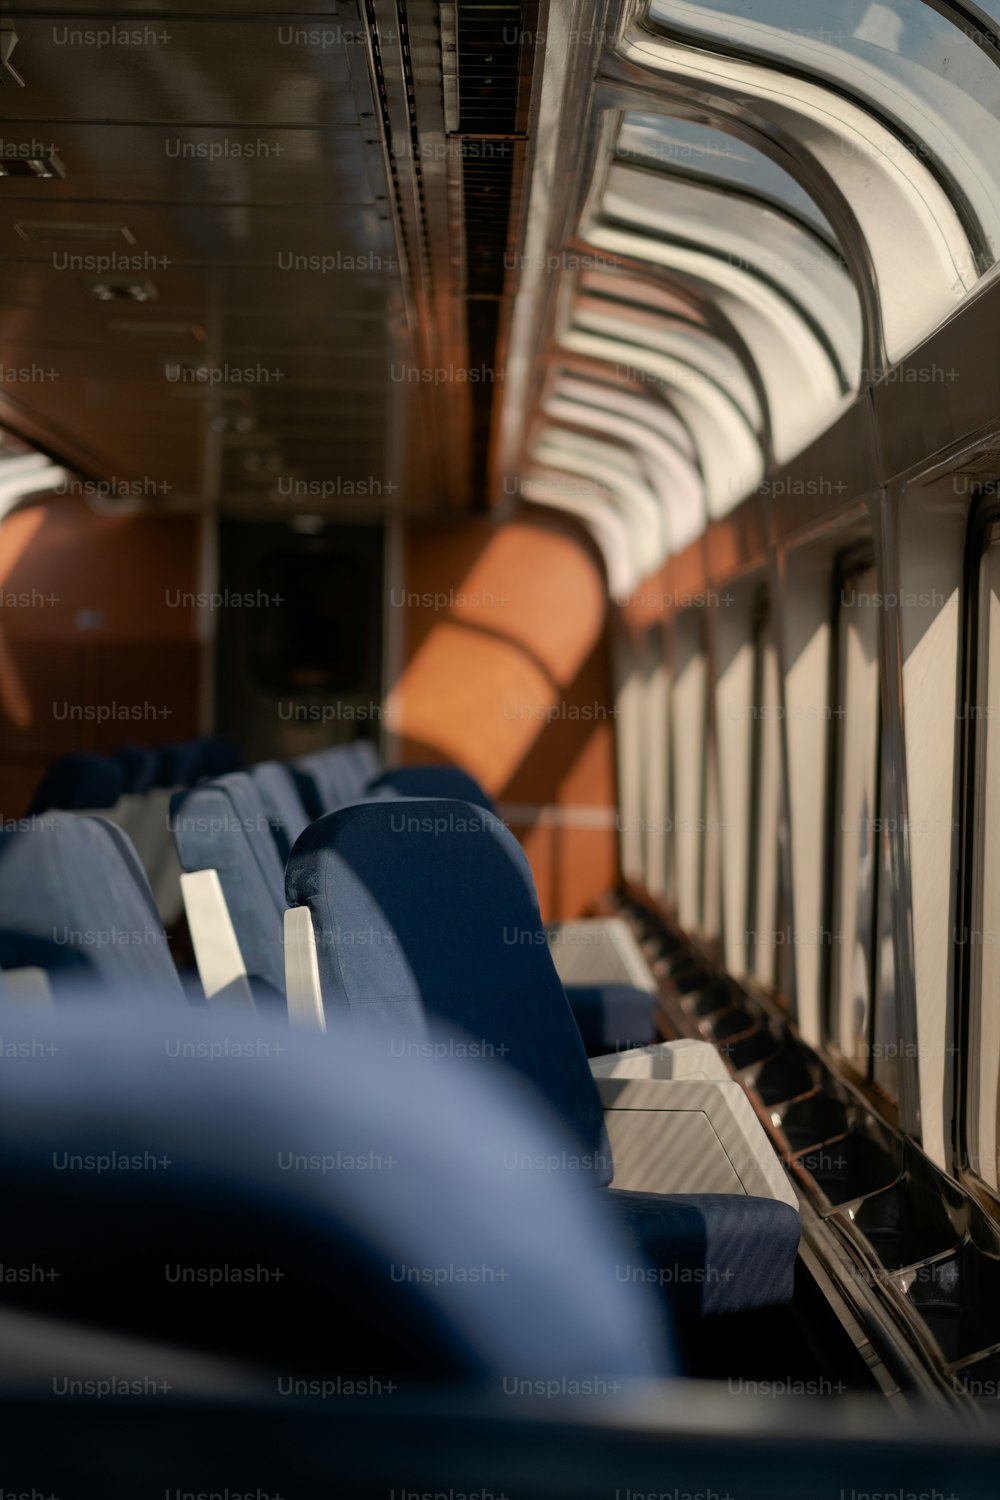 L'interno di un treno con sedili blu